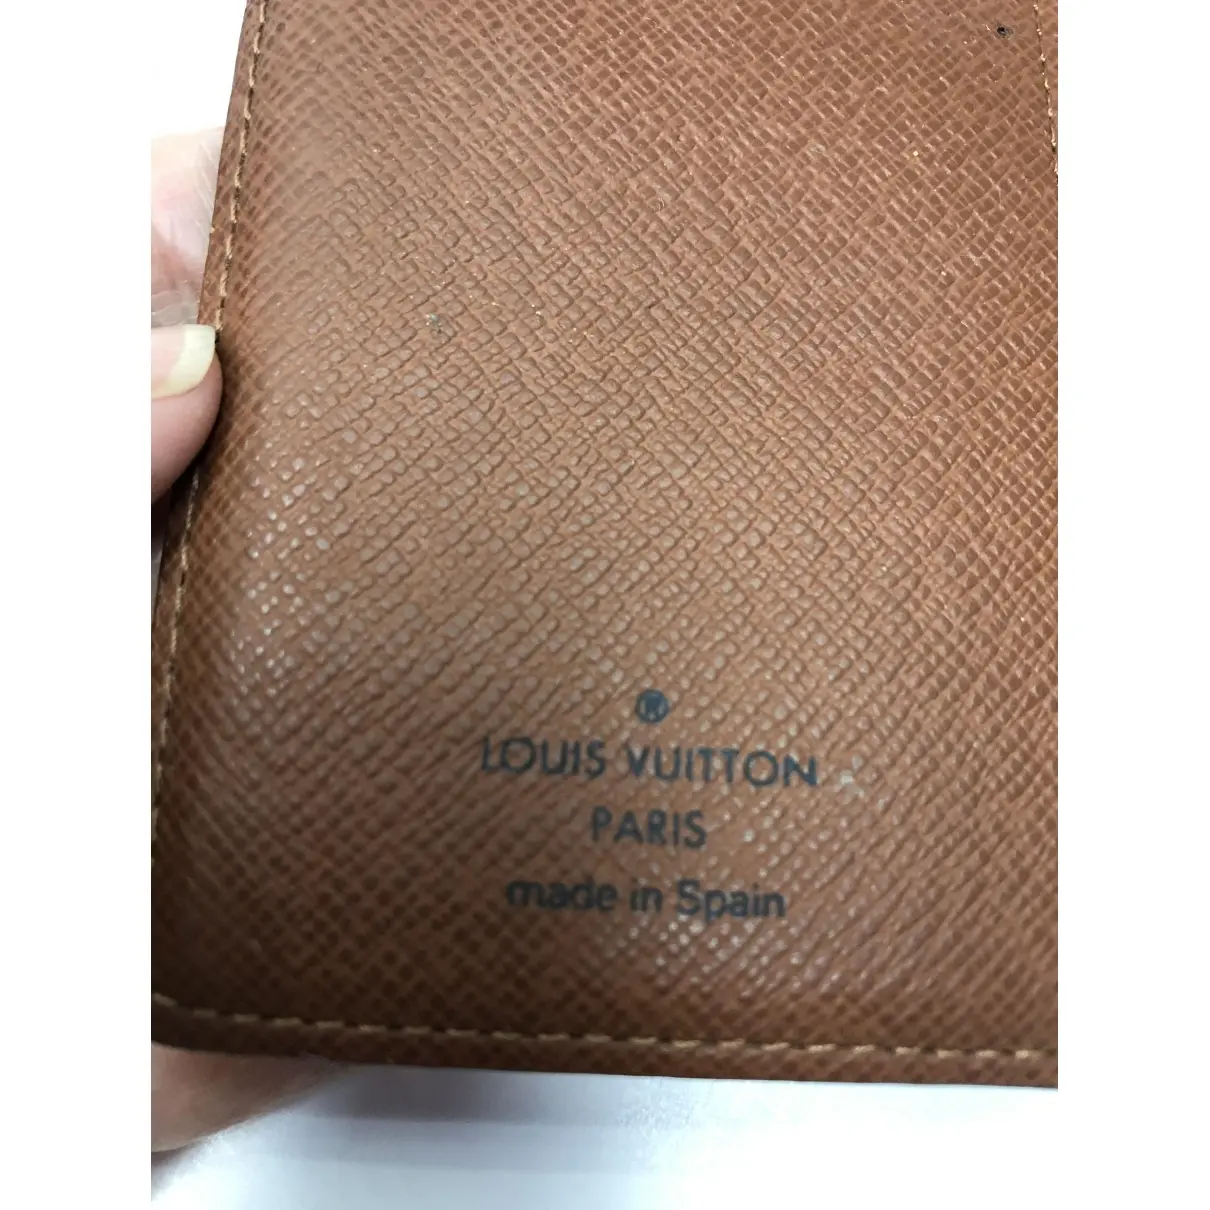 Buy Louis Vuitton Couverture d'agenda PM cloth diary online